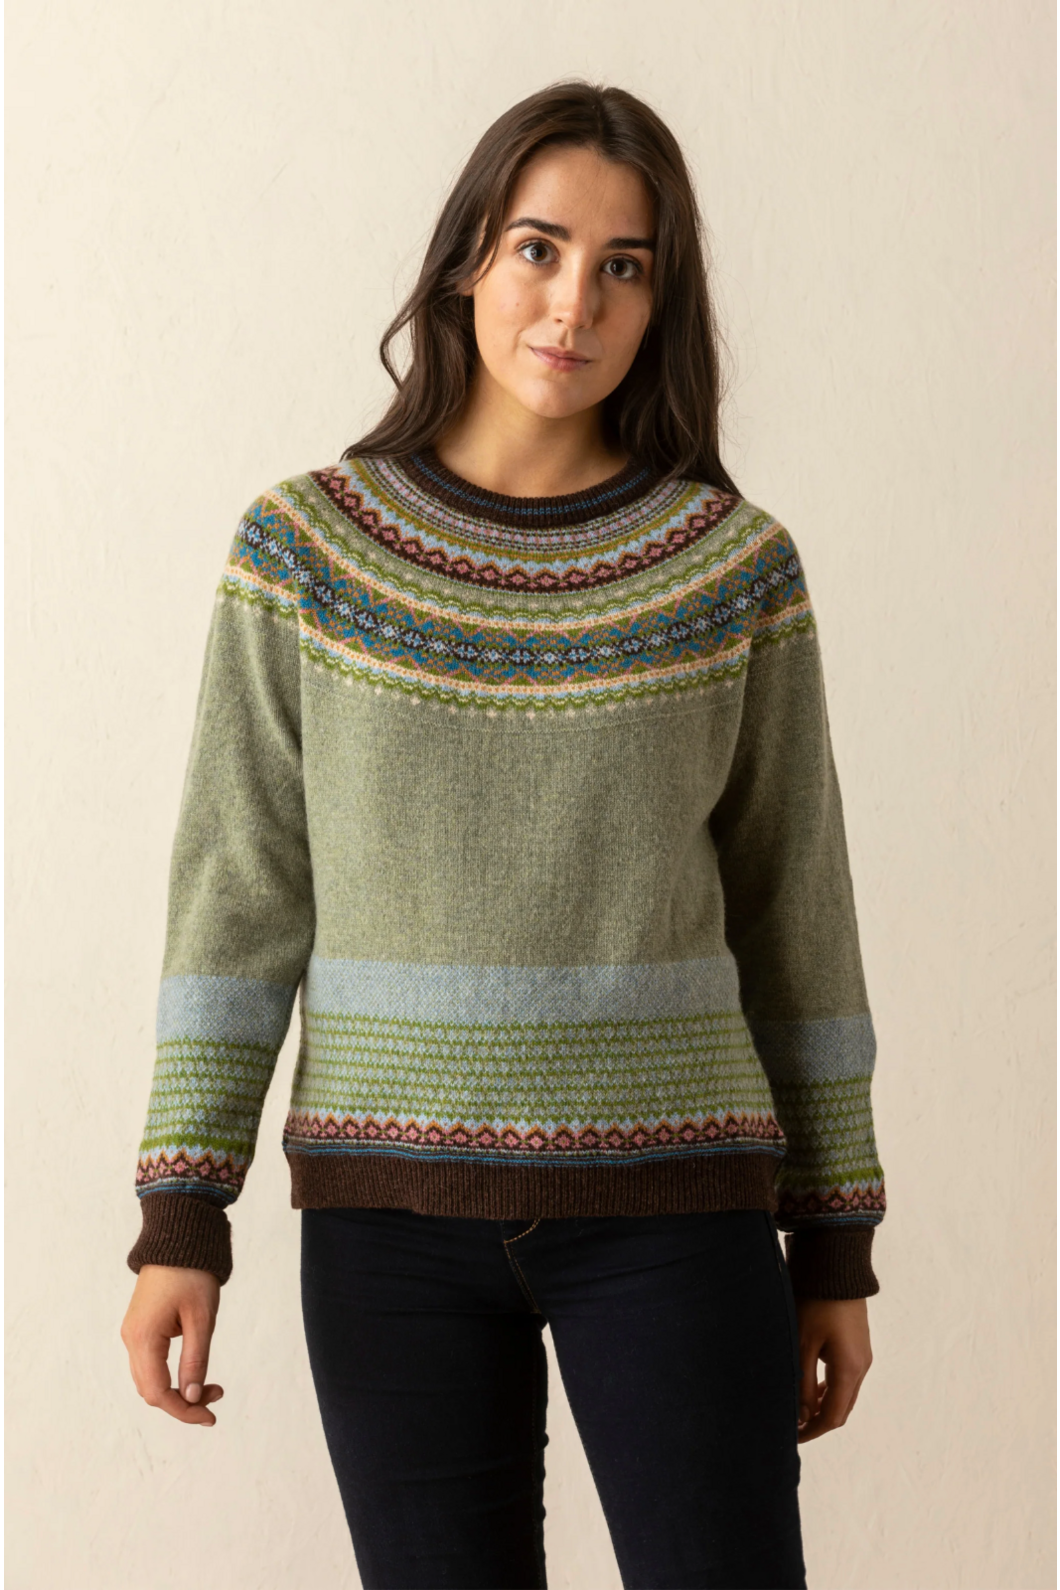 Eribe Knitwear Alpine Sweater in Willow